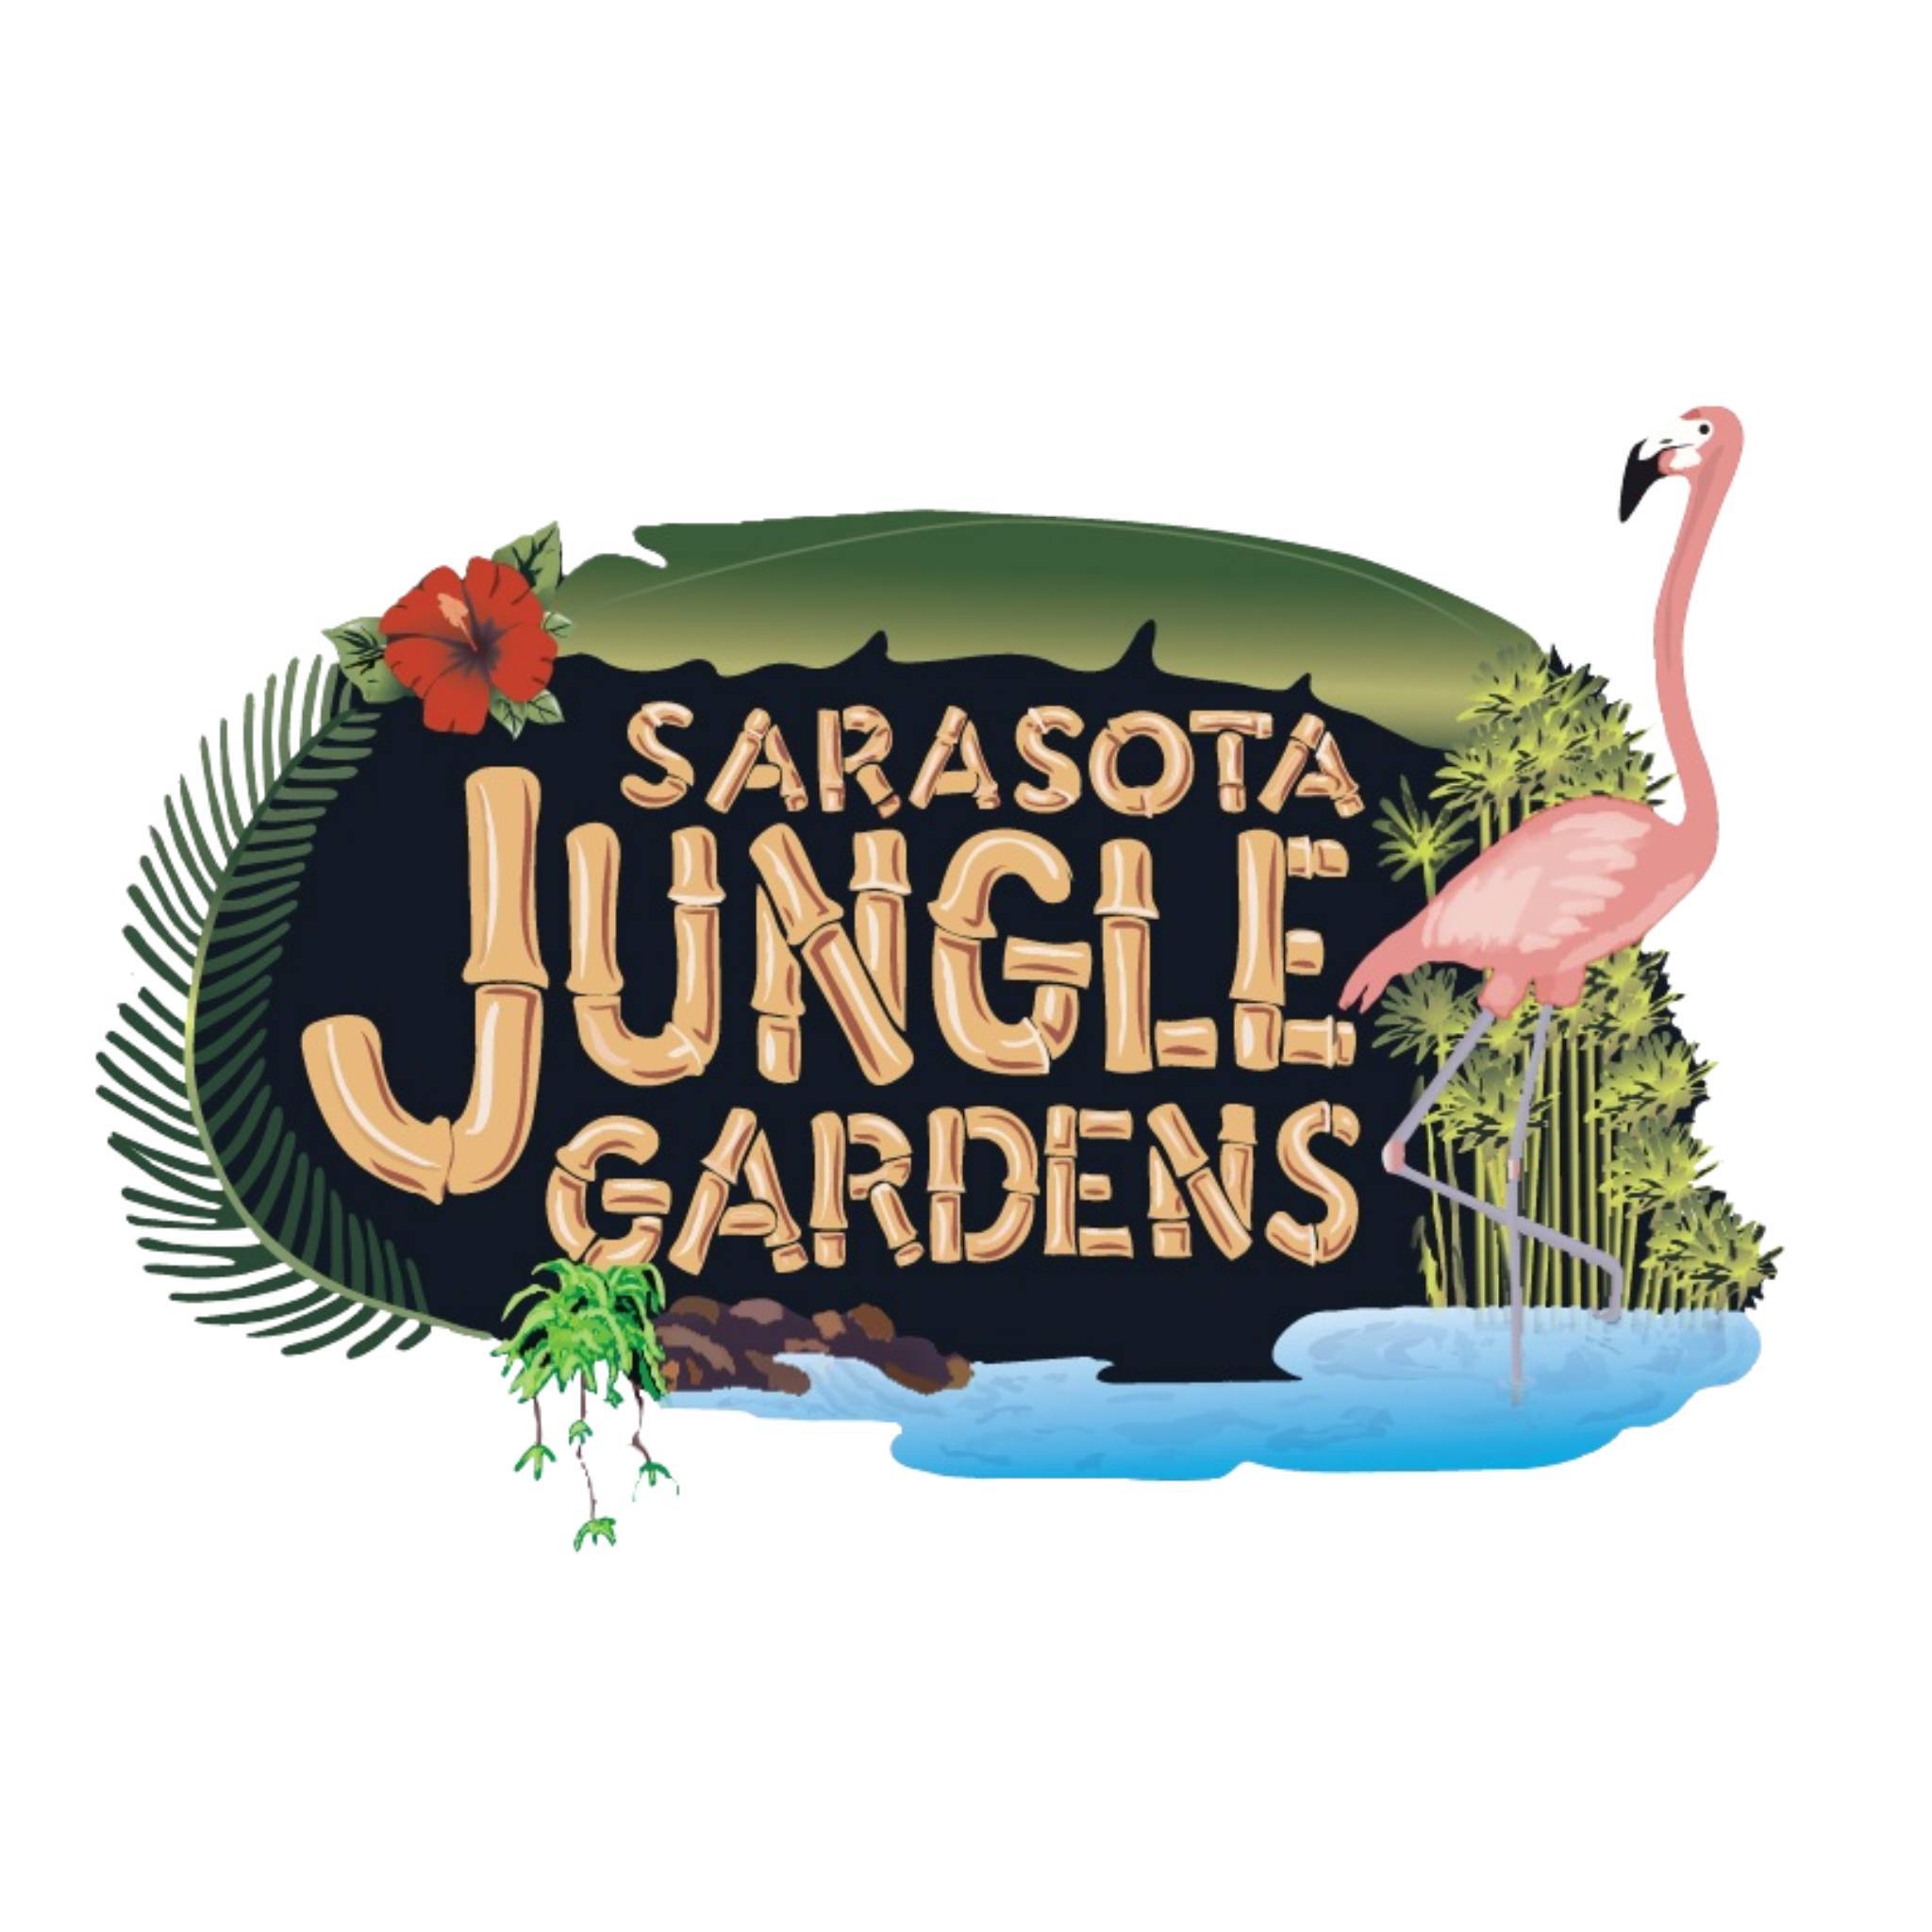 Sarasota Jungle Gardens|Park|Travel